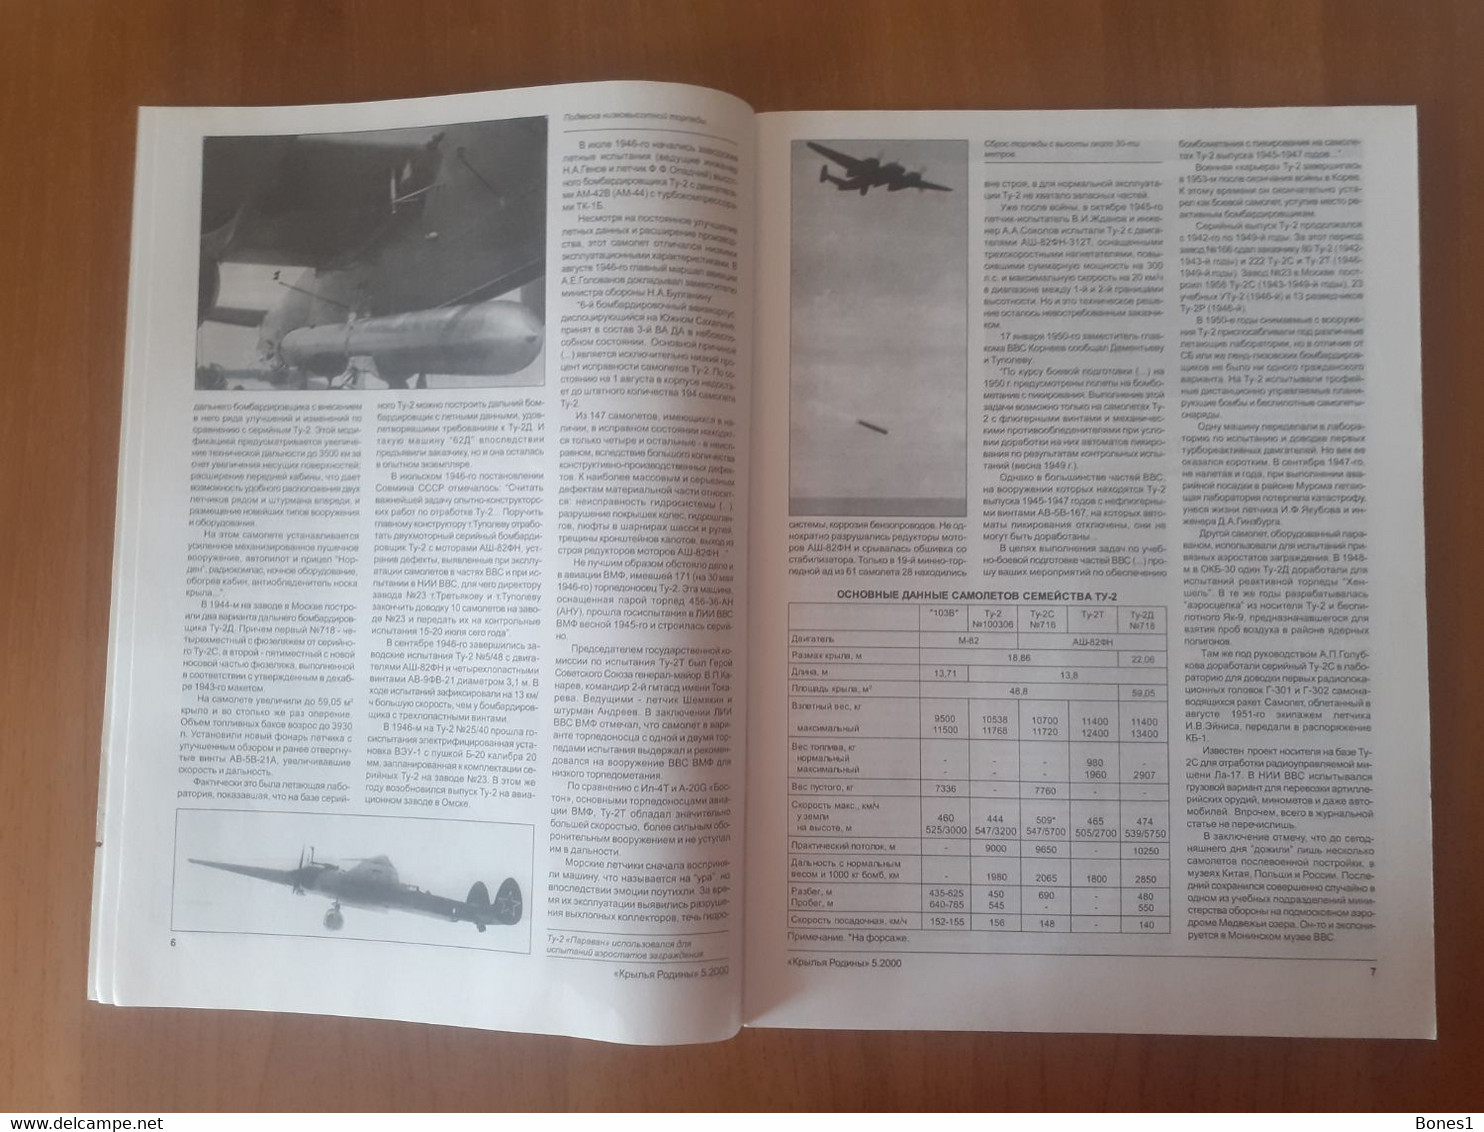 Russia Aviation Magazine 2000 - Aviación